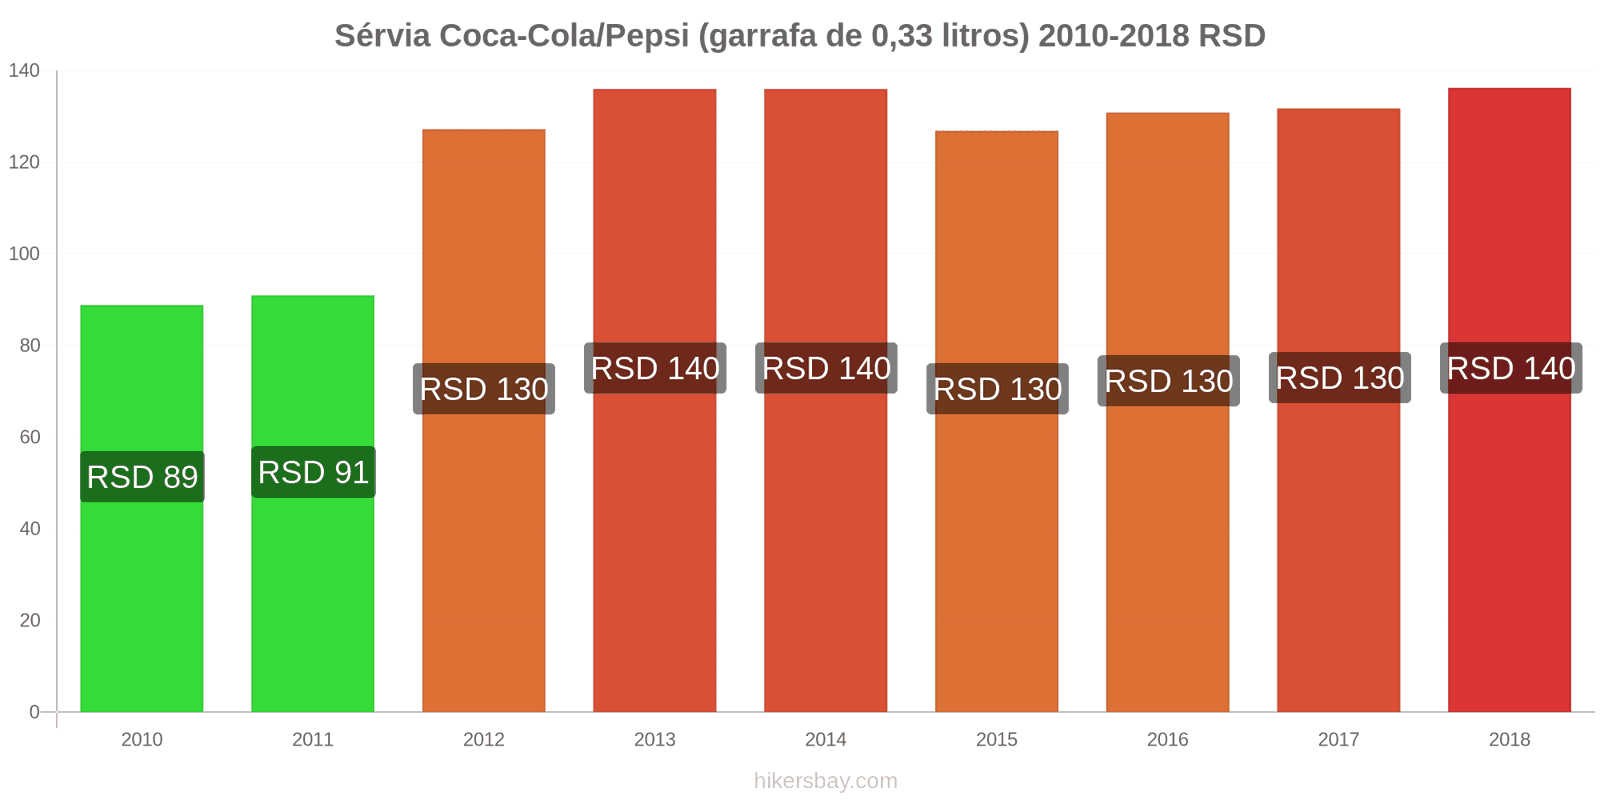 Sérvia mudanças de preços Coca-Cola/Pepsi (garrafa de 0.33 litros) hikersbay.com